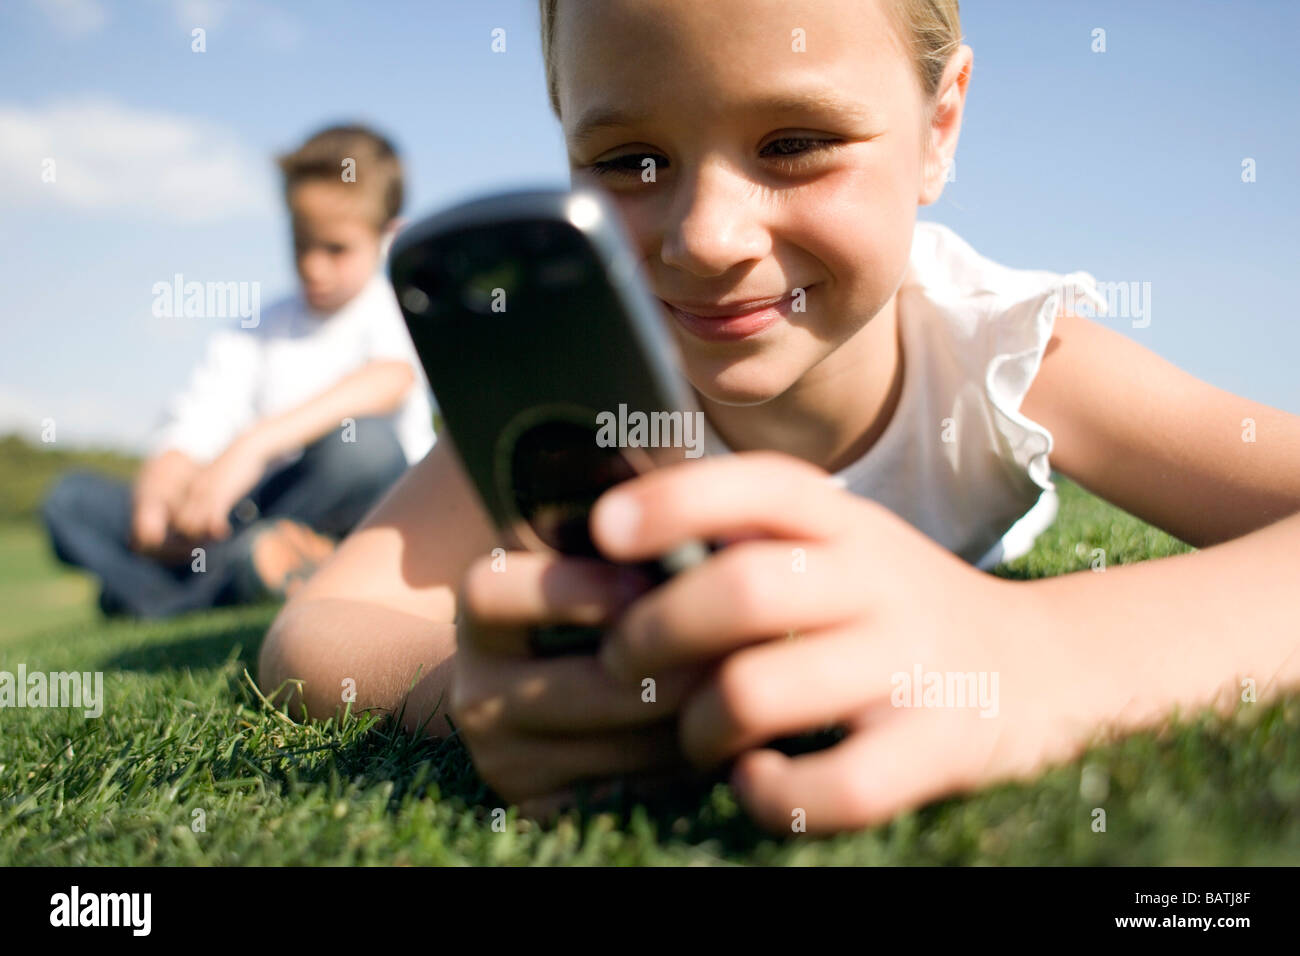 Mädchen mit einem mobilen Phonewhile auf dem Rasen liegen. Ein Junge sitzt in Thebackground. Stockfoto